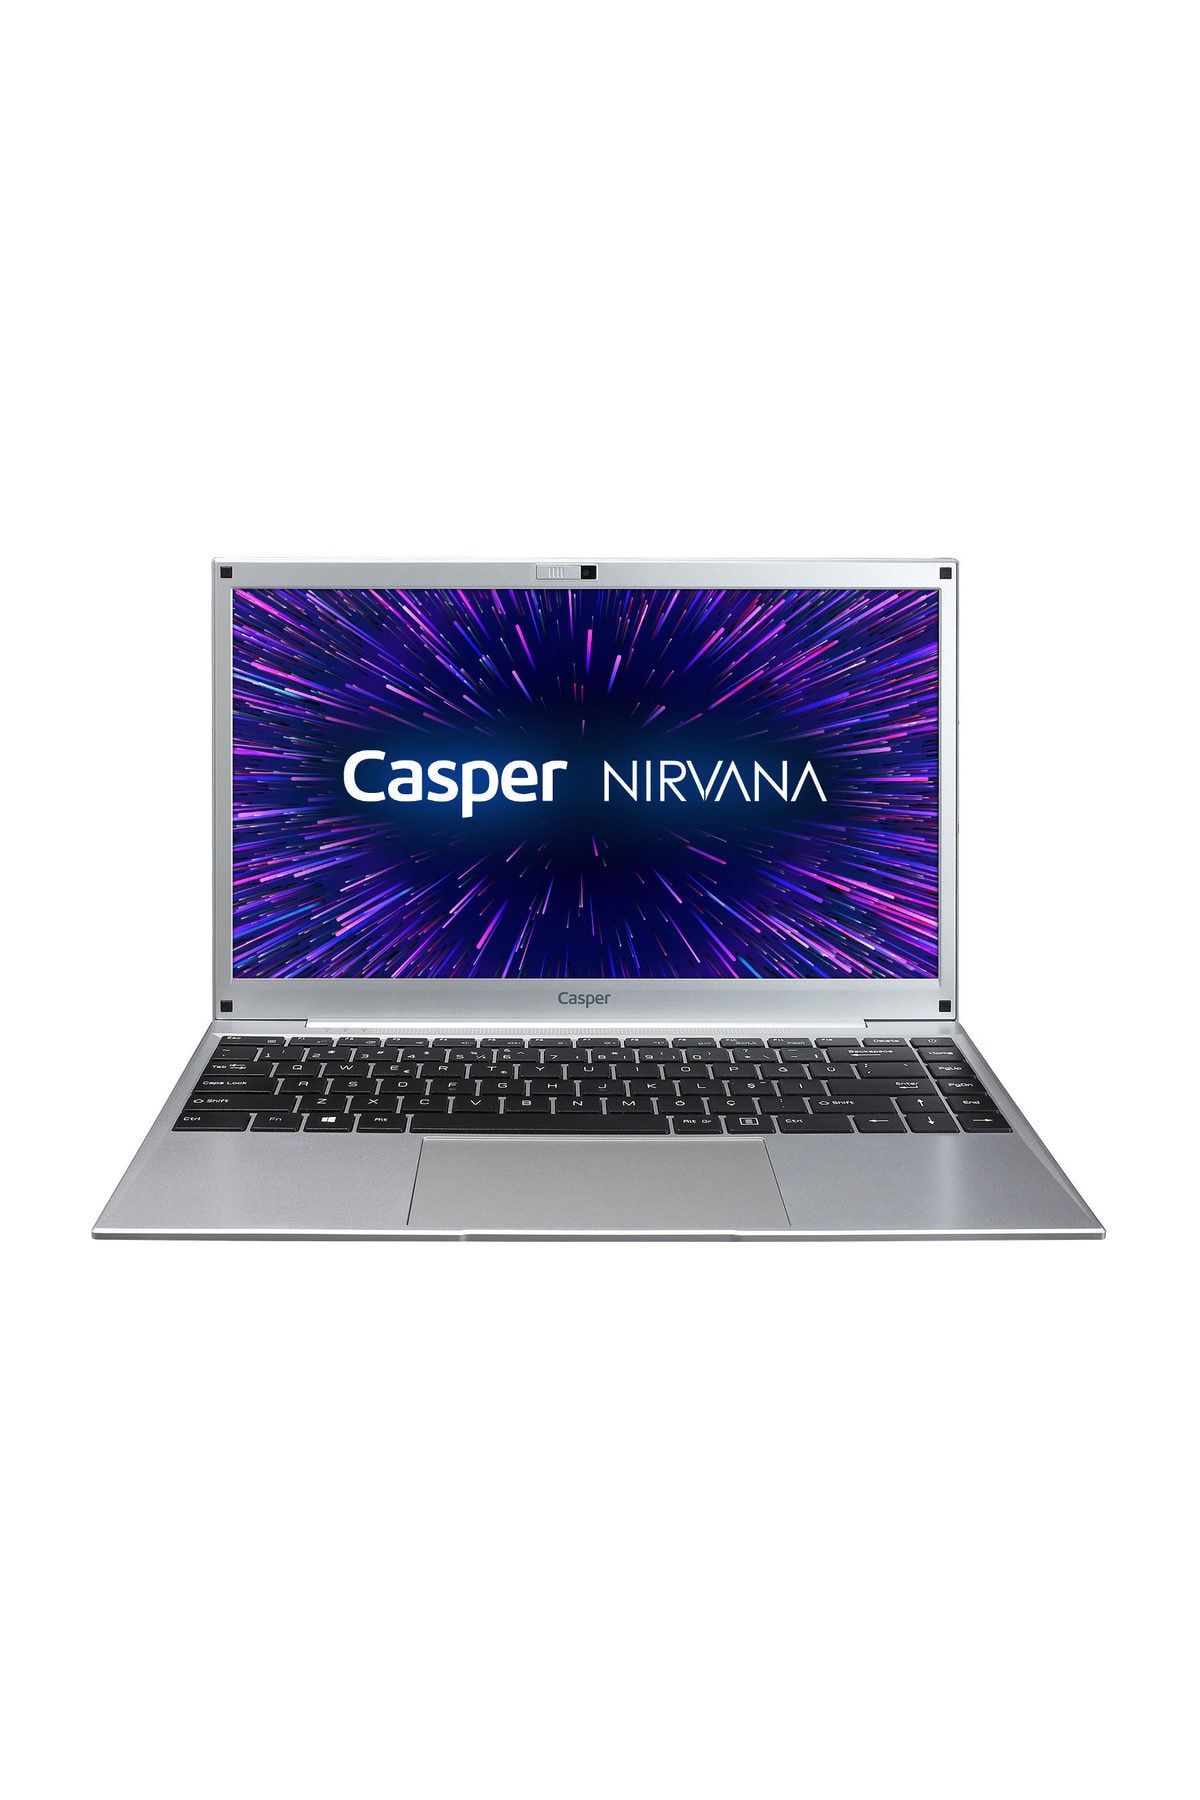 Casper Nirvana C350.5030-4D00X Intel Core Pentium G5030 4GB RAM 240GB SSD Freedos